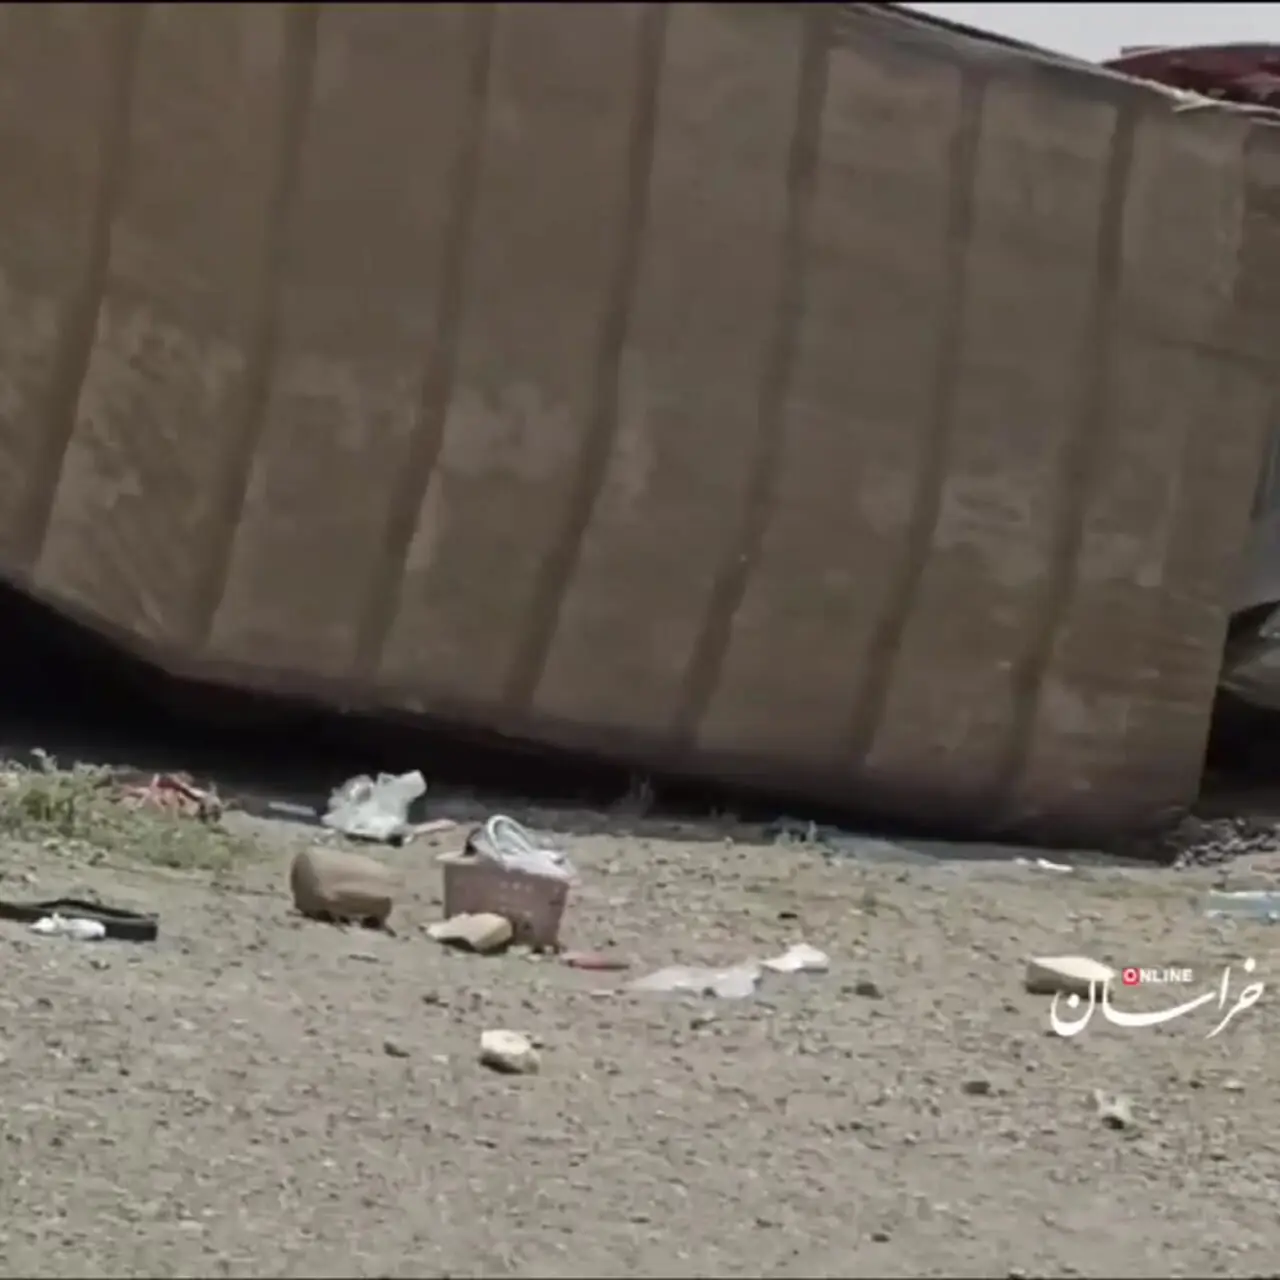 فیلمی از پرس  شدن خودروی پژو پارس زیر تریلی در جاده گرمسار سرخه